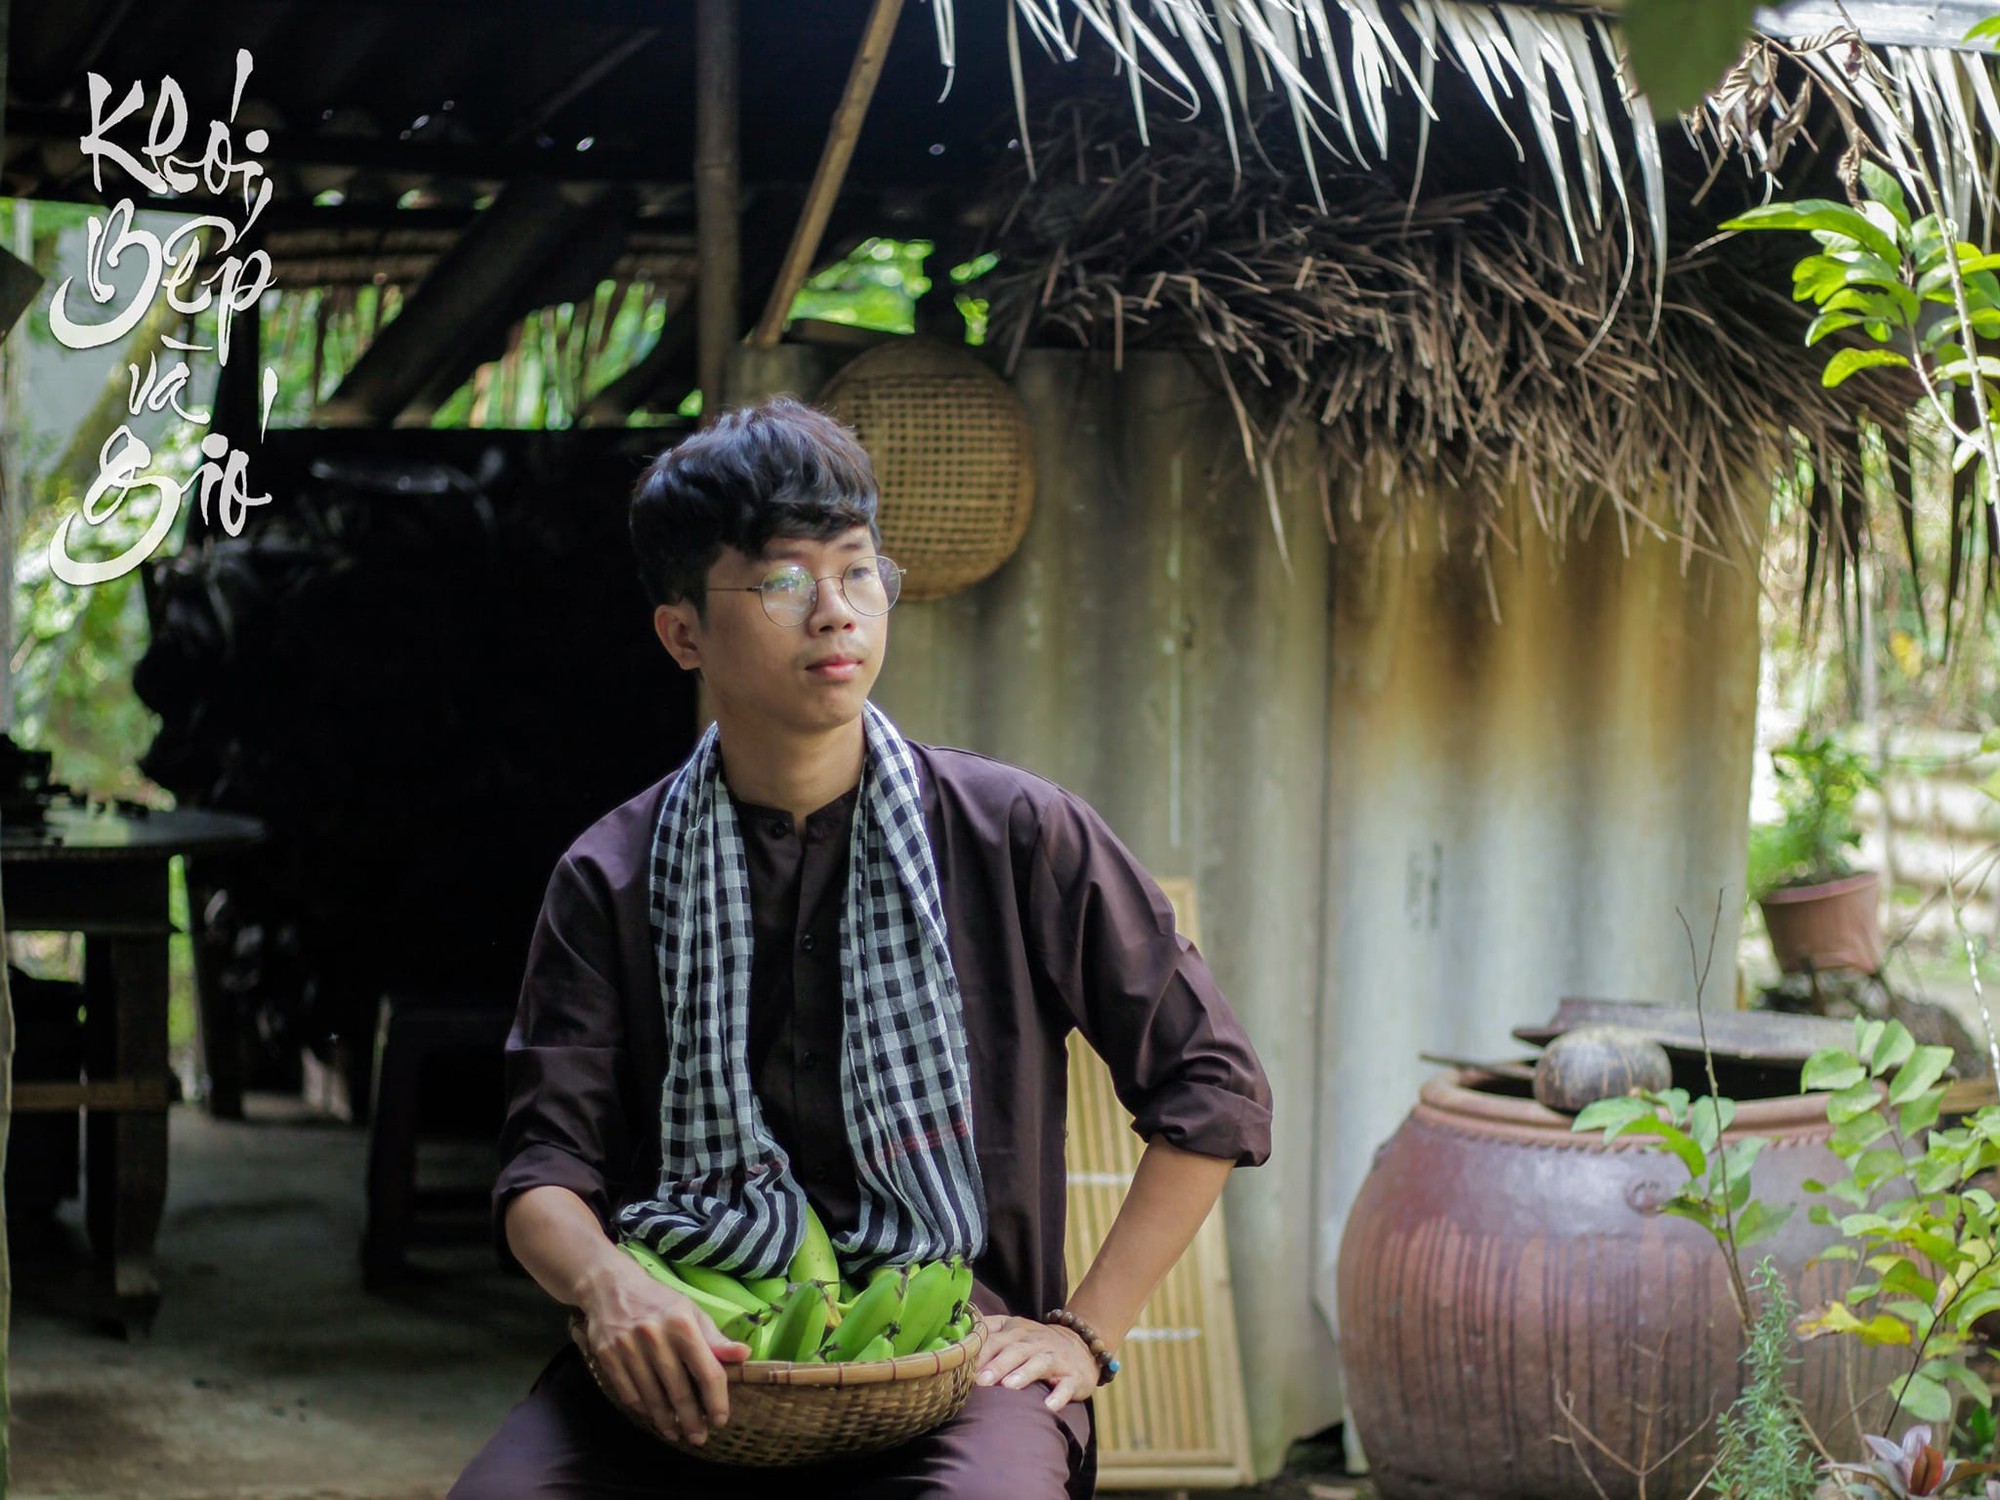 Muốn ở gần bố mẹ, chàng trai Tiền Giang bỏ việc lương cao ở tập đoàn Nhật Bản, về quê kiếm sống từ chính góc bếp, mảnh vườn - Ảnh 8.